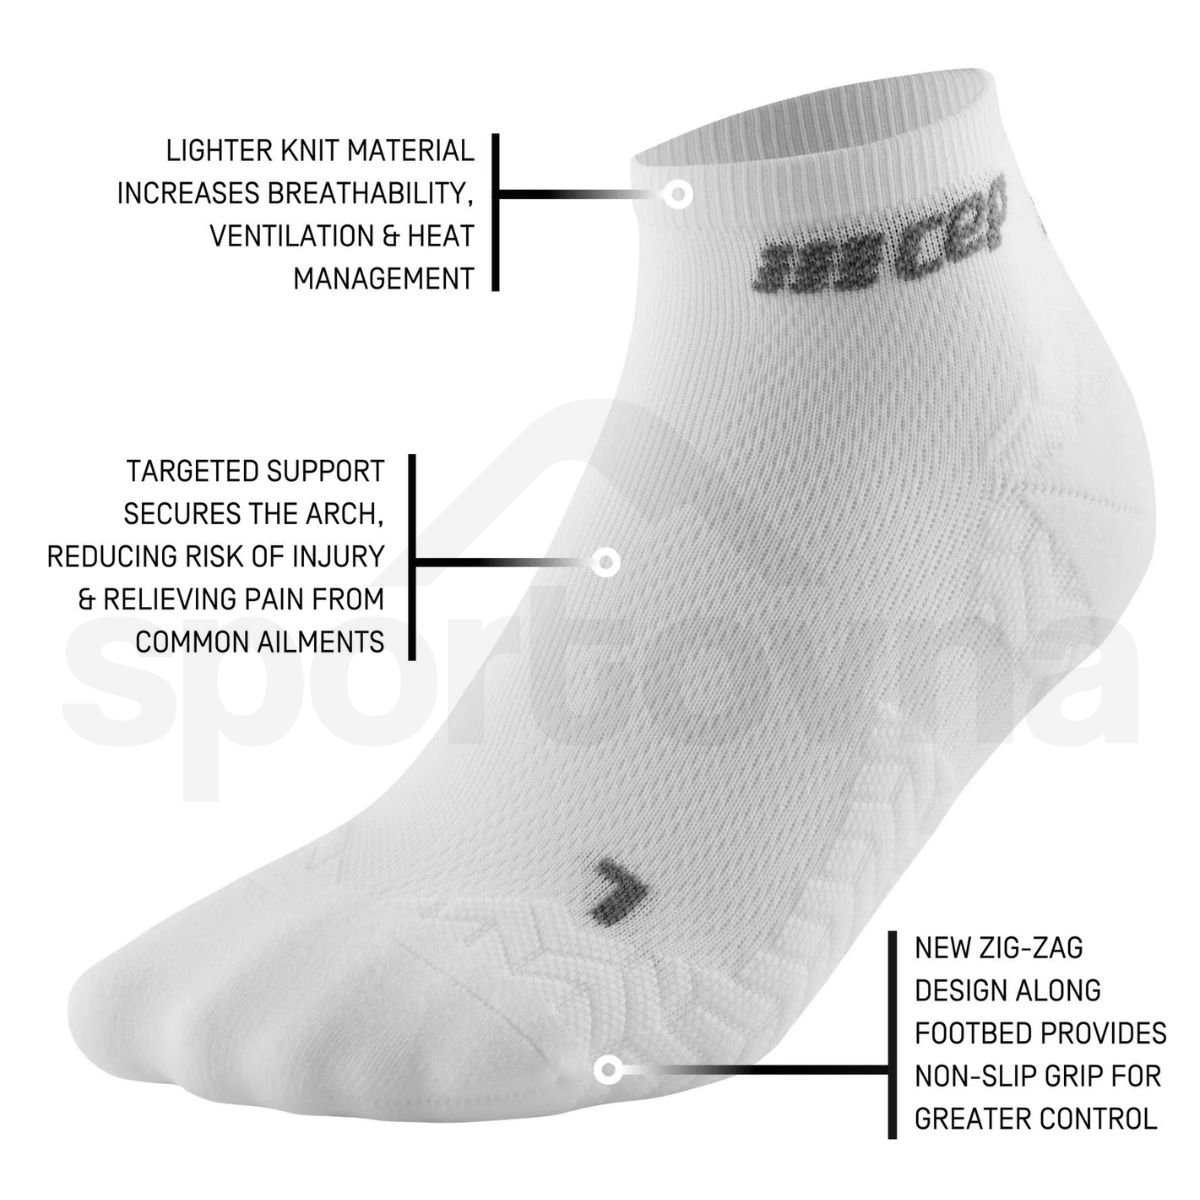 Ponožky CEP Ultralight W - bílá